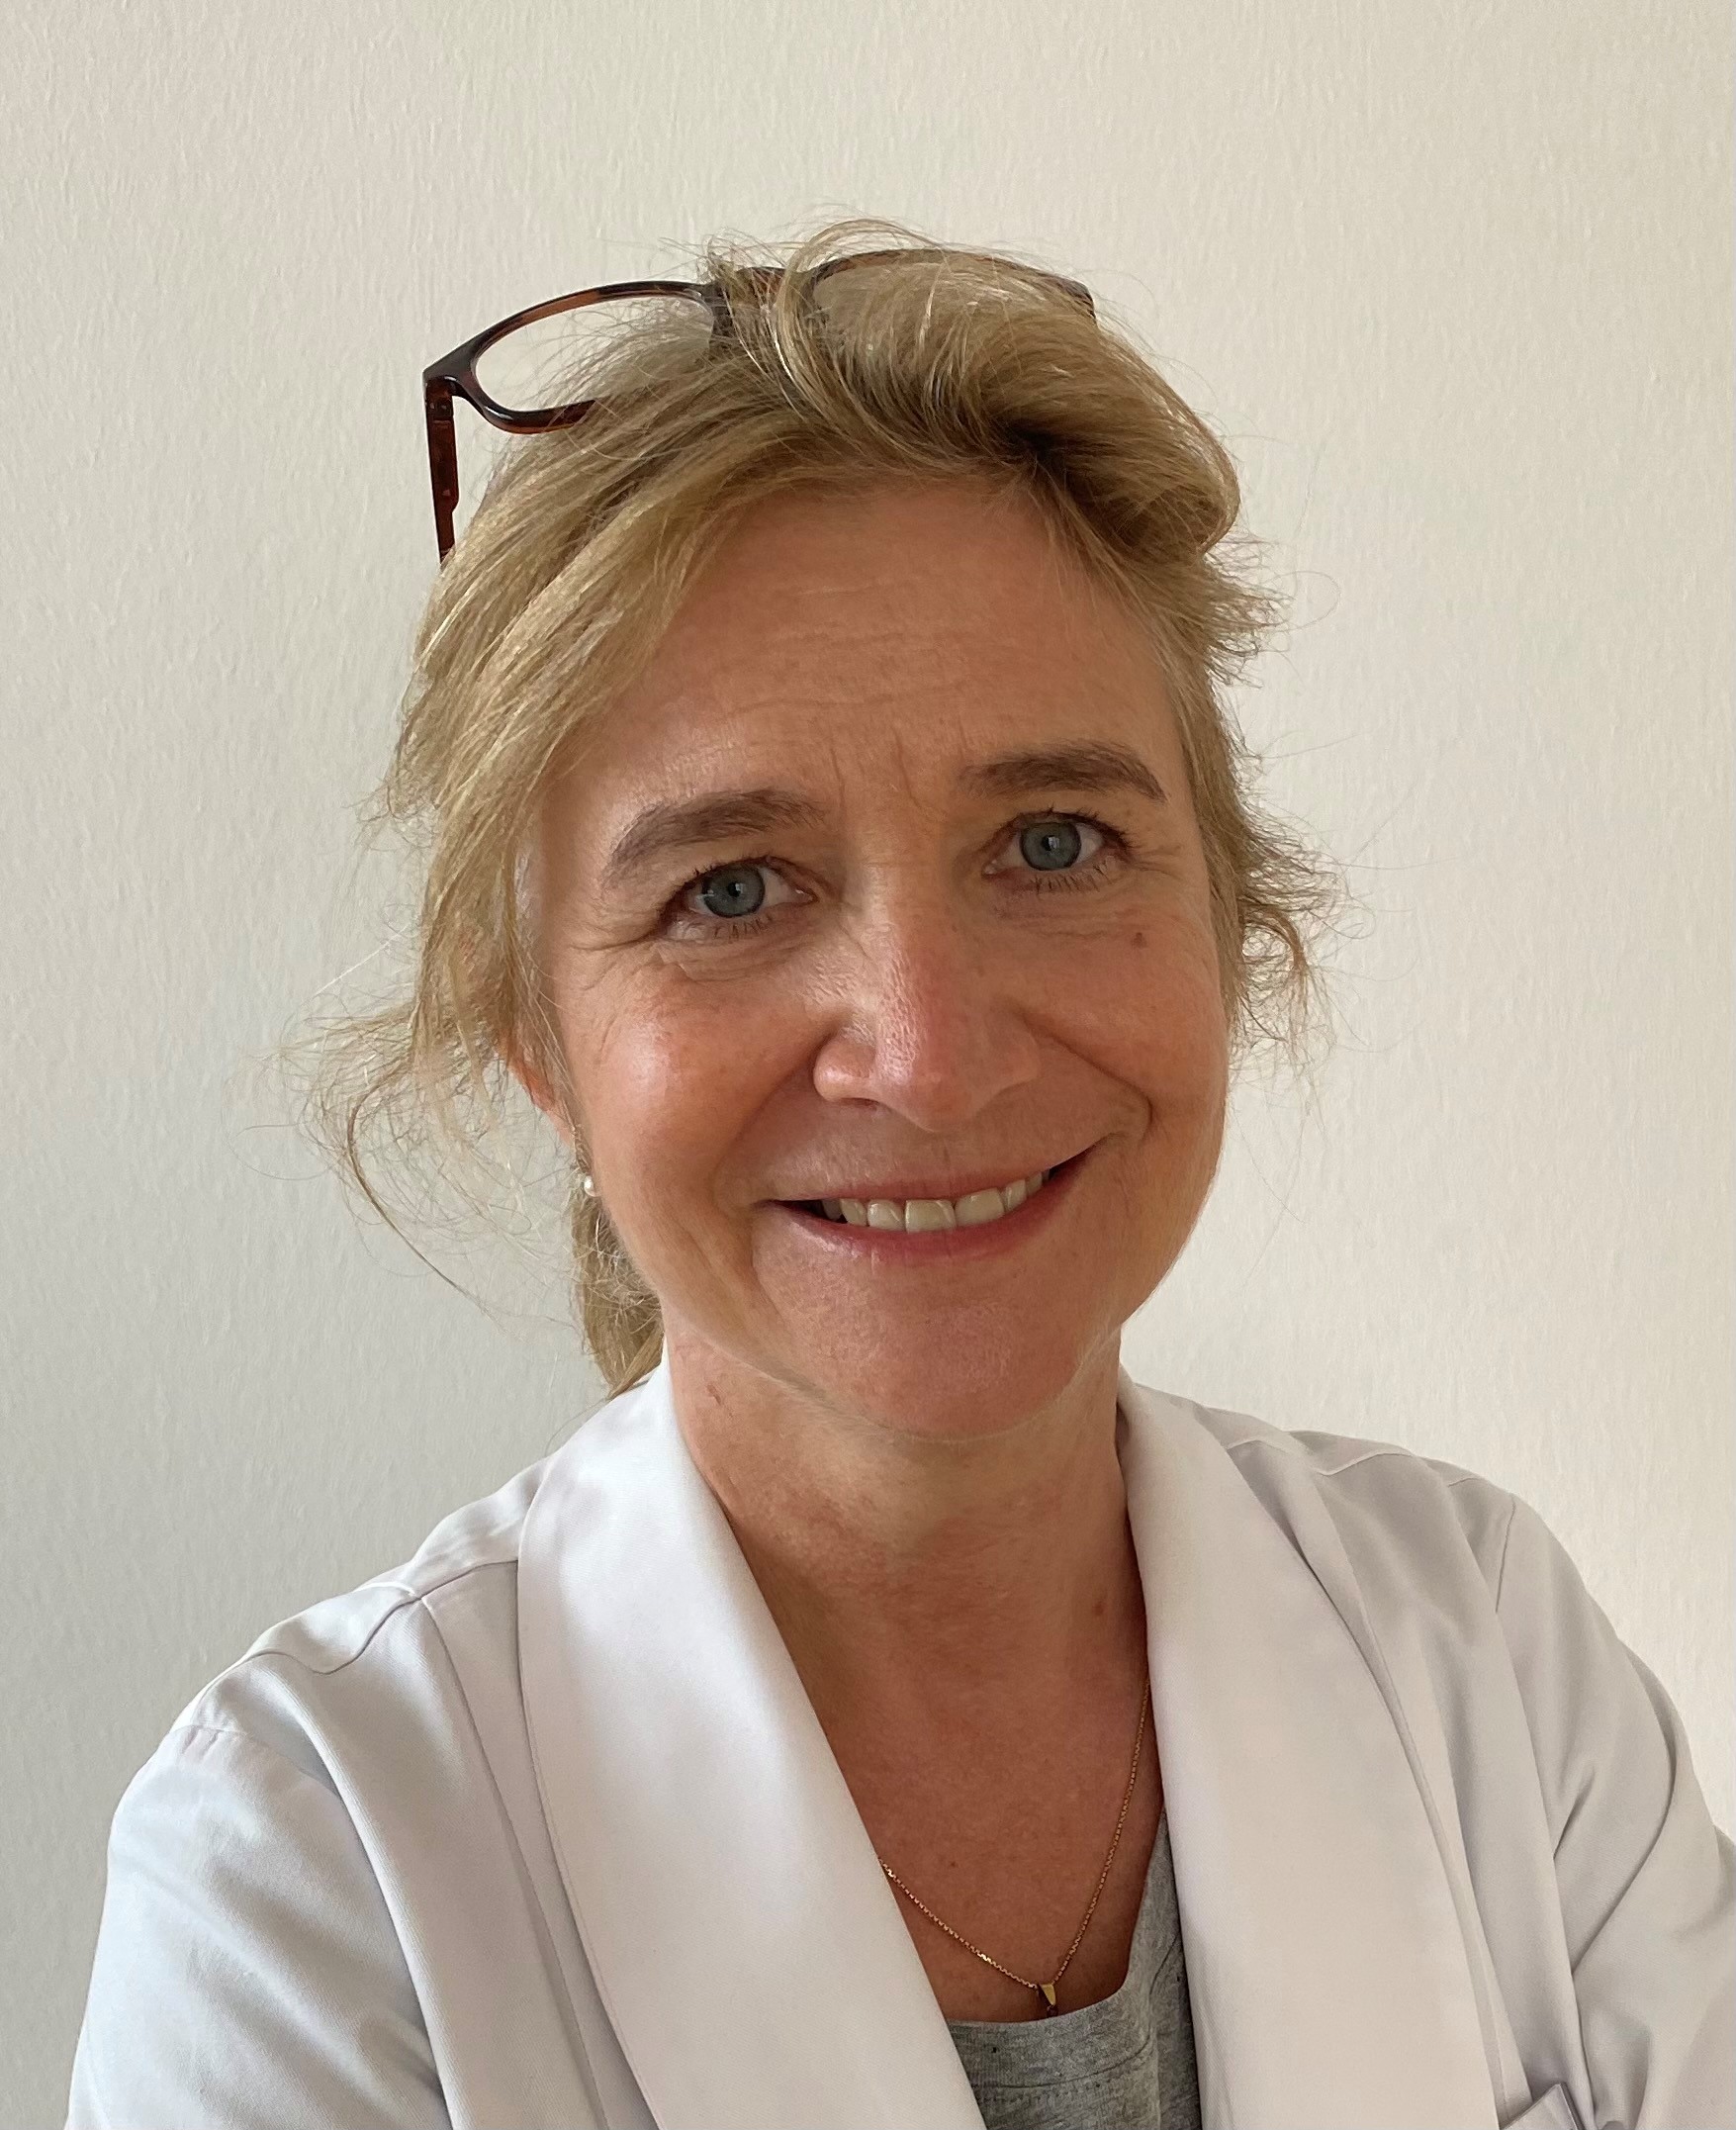 Prof. Dr. med. Simone Wagner